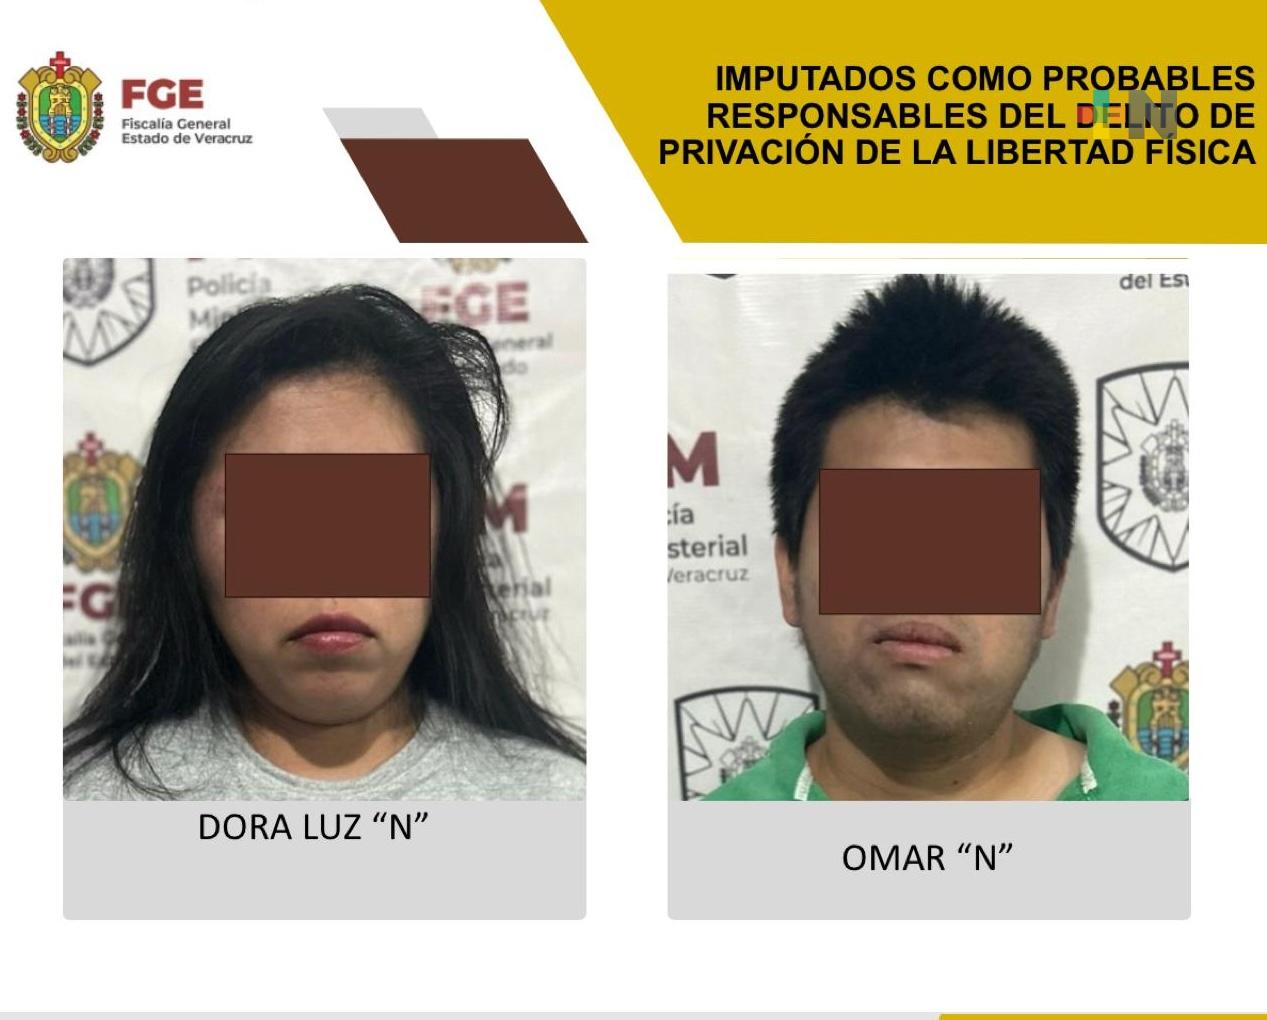 Imputados Dora Luz «N» y Omar «N» como probables responsables del delito de privación de la libertad física